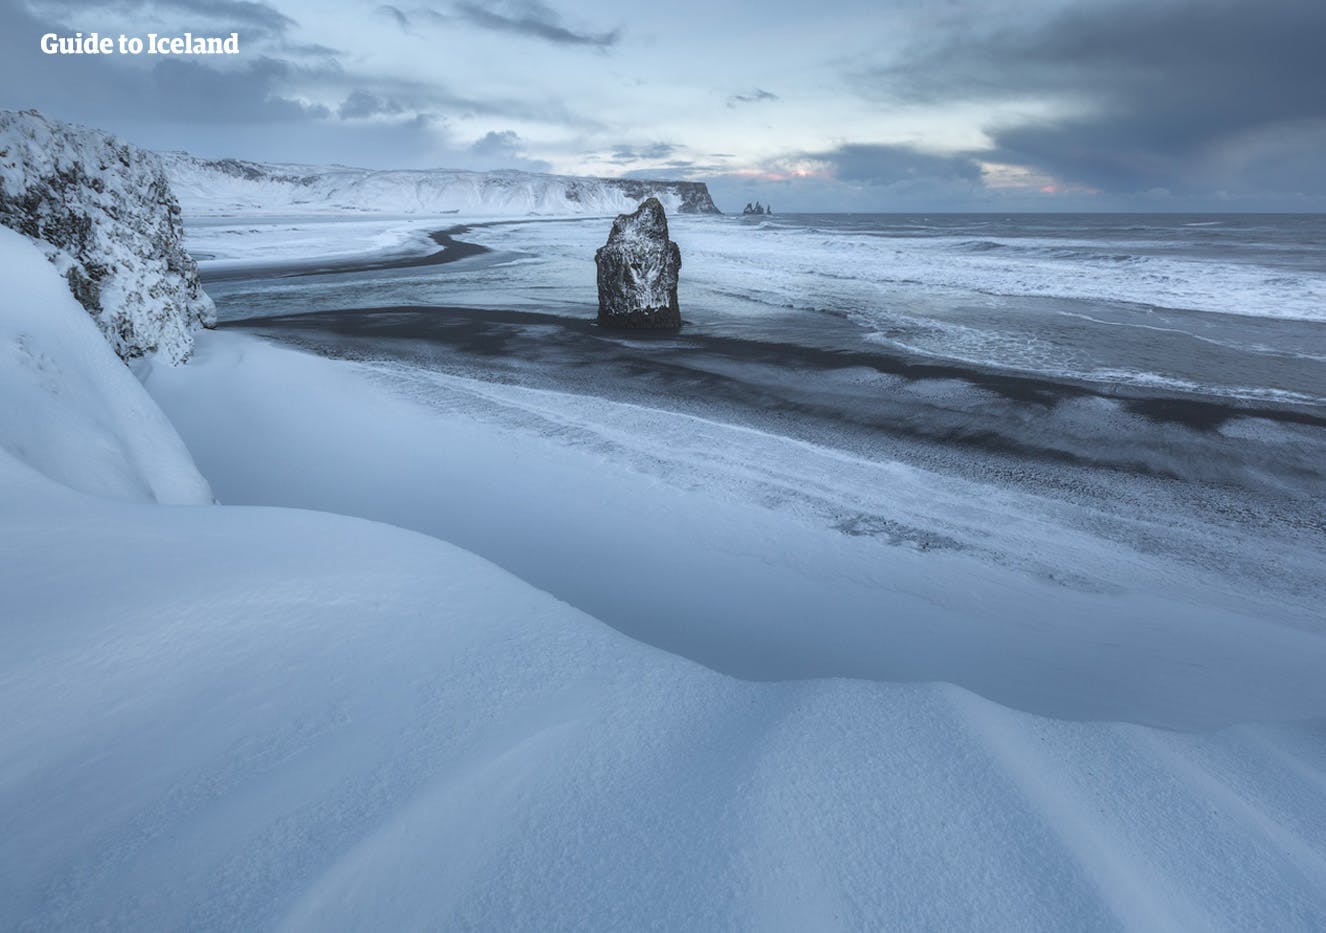 หาดทรายดำบนชายฝั่งทางใต้ของไอซ์แลนด์ในหน้าหนาวมองเห็นได้แค่ส่วนที่น้ำทะเลซัดเข้ามาโดนหิมะ